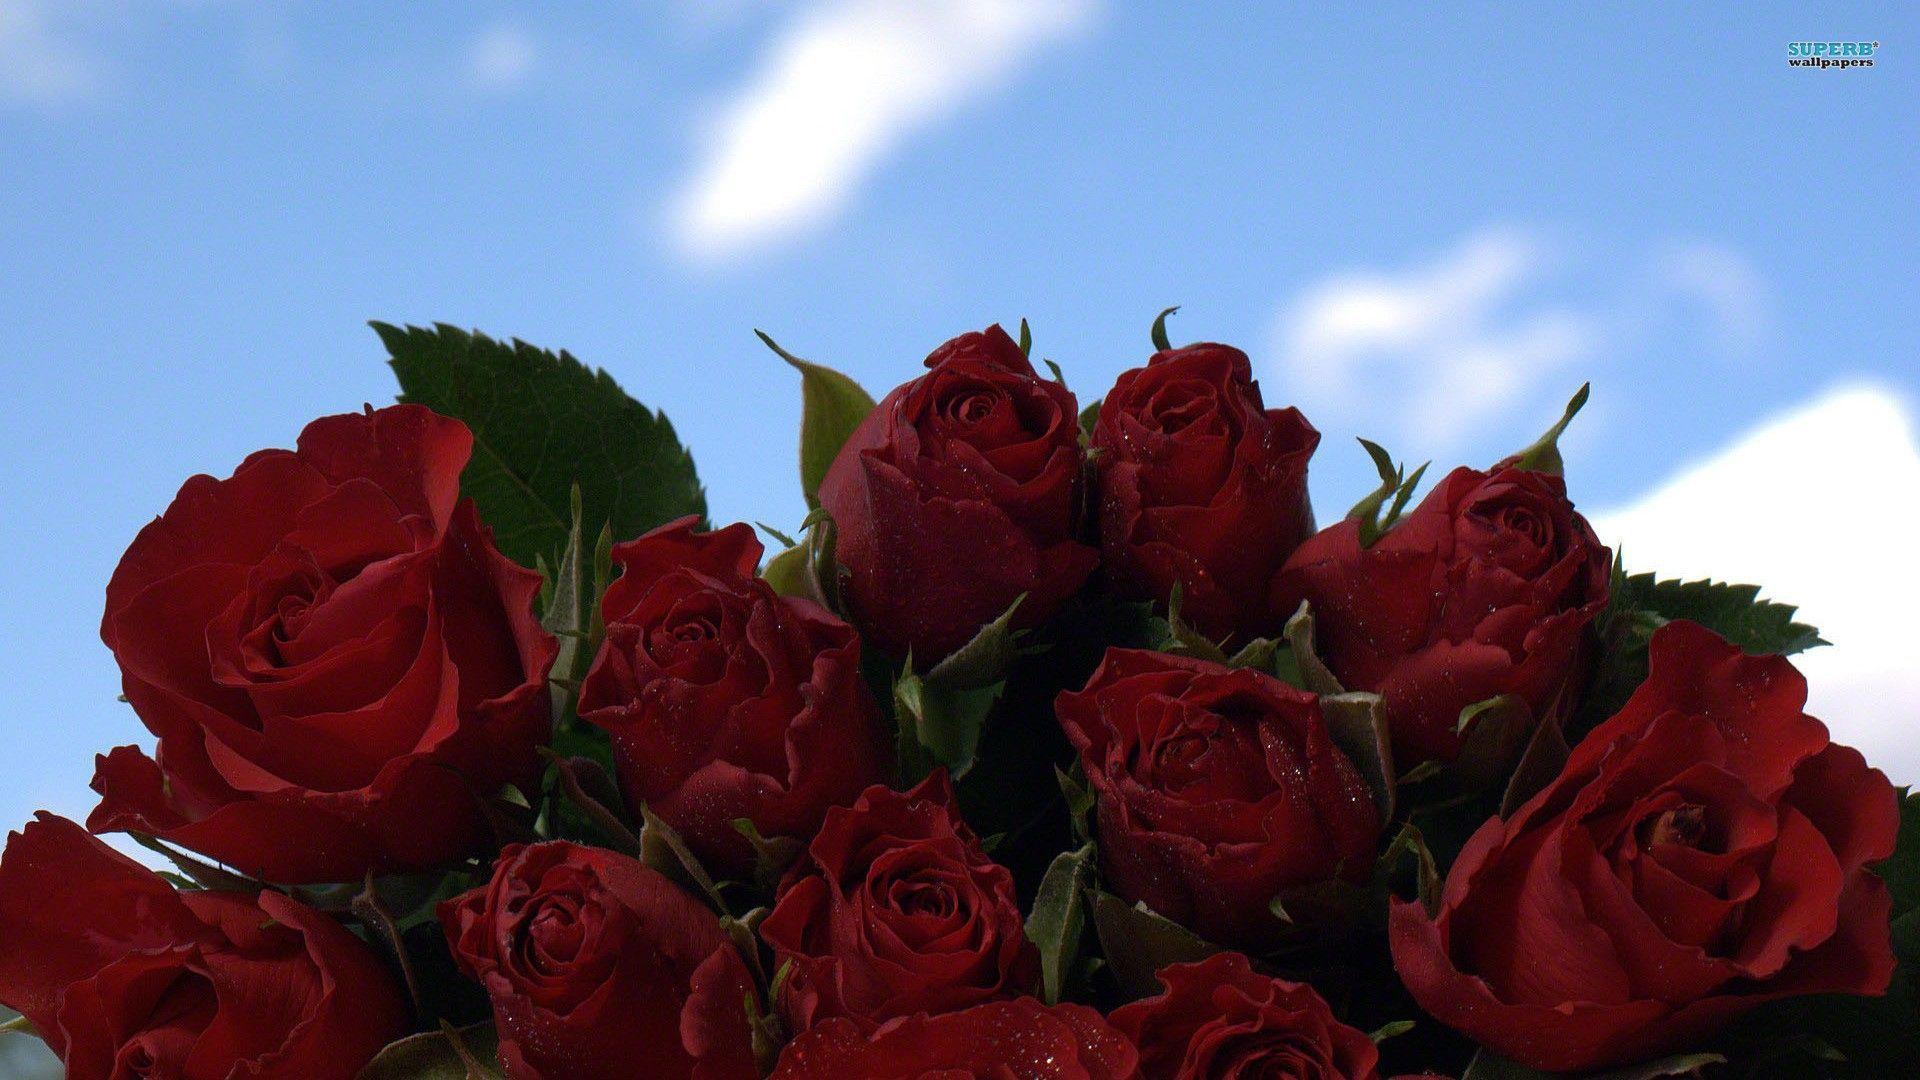 Wallpaper flowers clockhowever beautiful saver roses screen admin